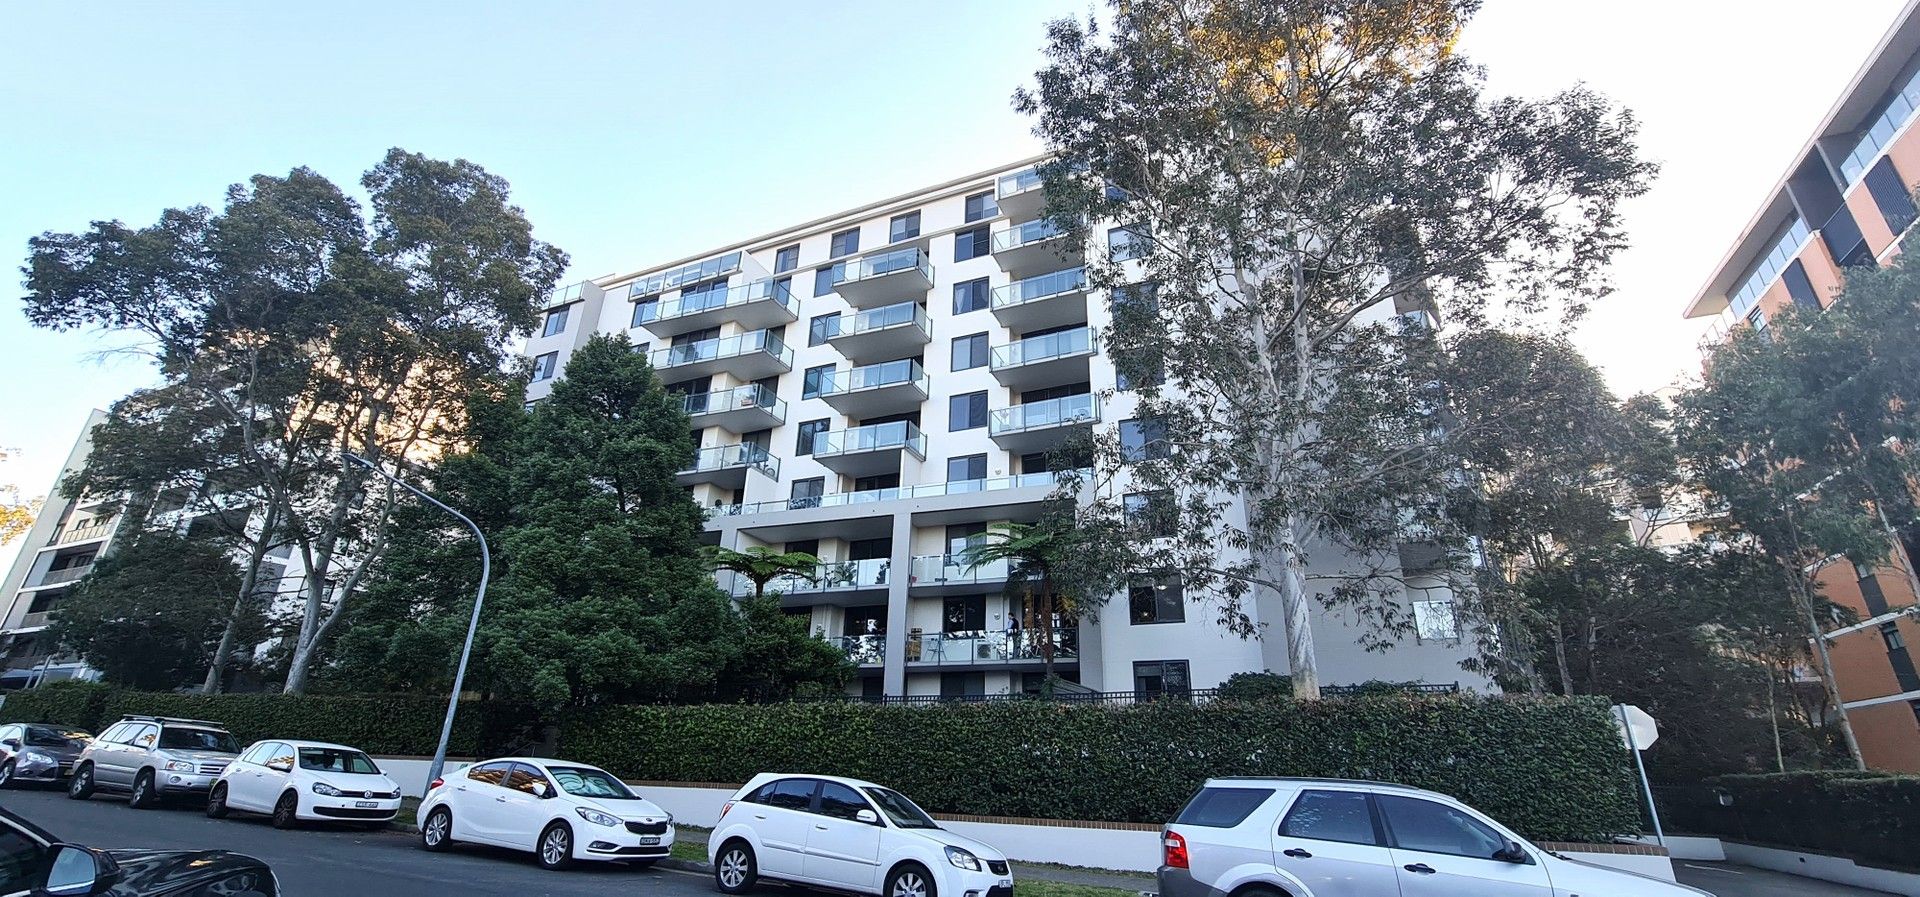 2 bedrooms Apartment / Unit / Flat in 6/11-19 Waitara Avenue WAITARA NSW, 2077